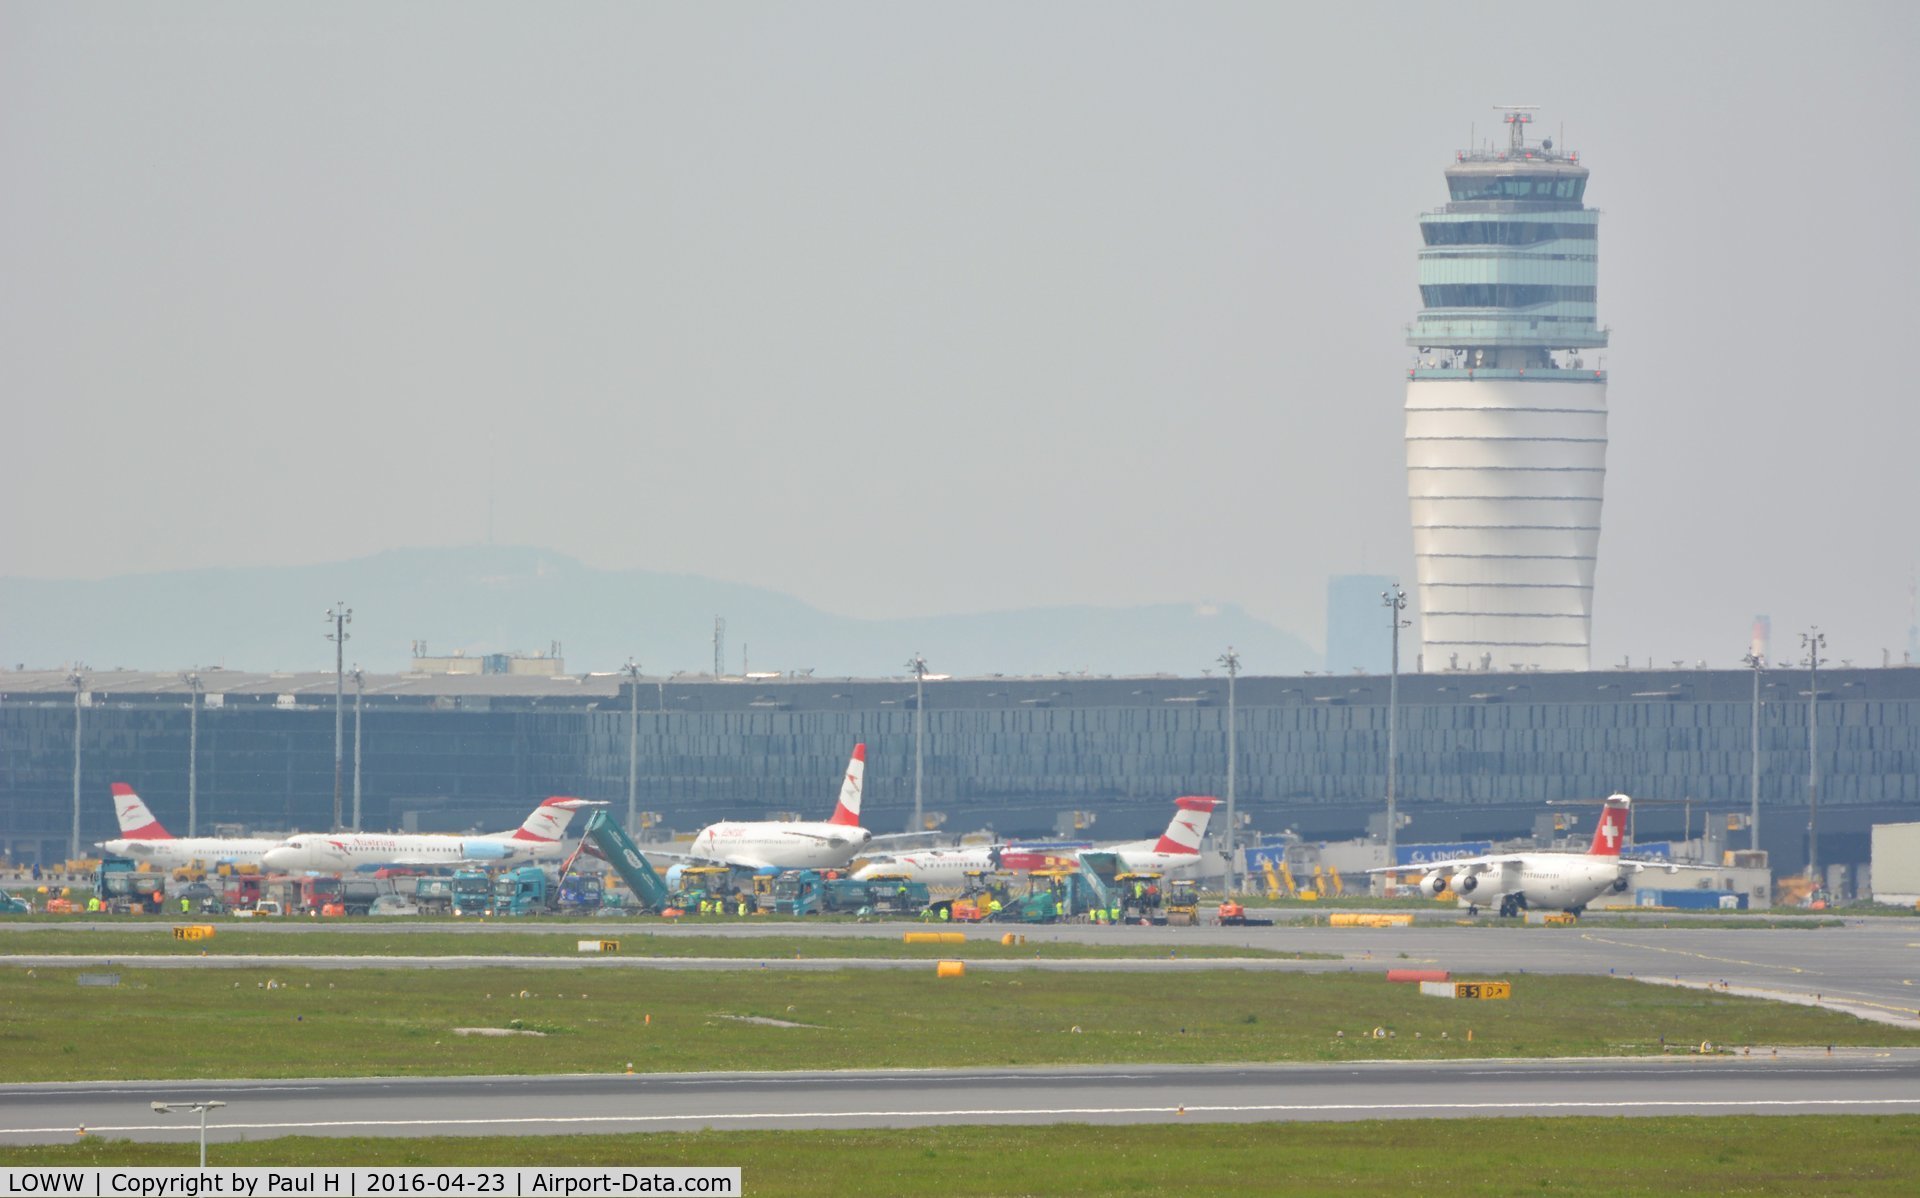 Vienna International Airport, Vienna Austria (LOWW) - Restauration of the runway at Vienna Intl. Airport